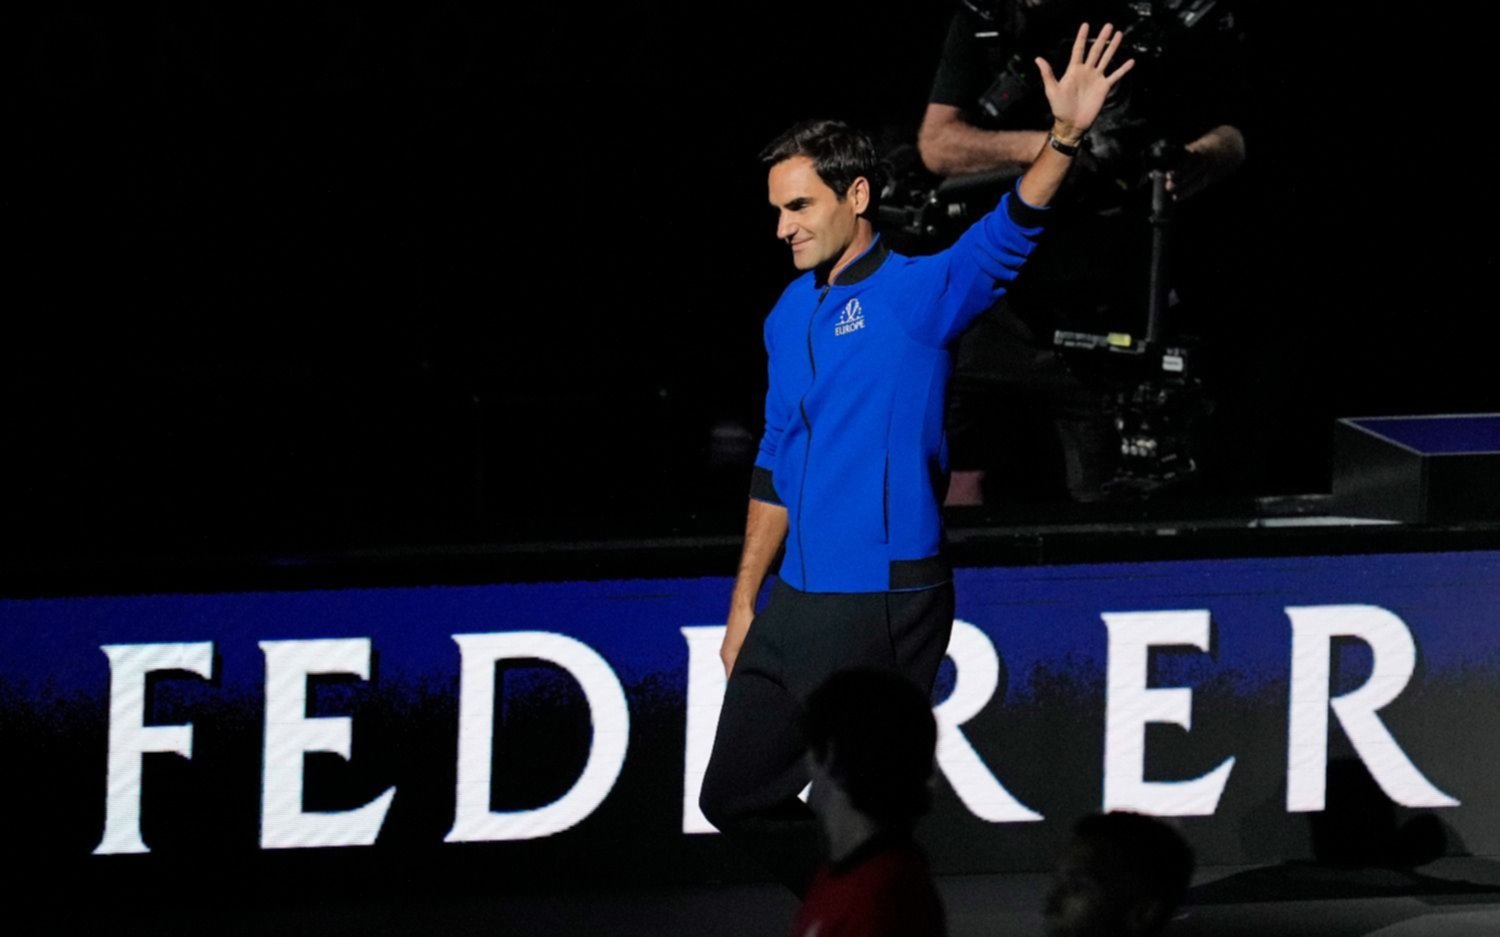 El legendario Roger Federer le dijo adiós al tenis entre ovación, lágrimas y emoción